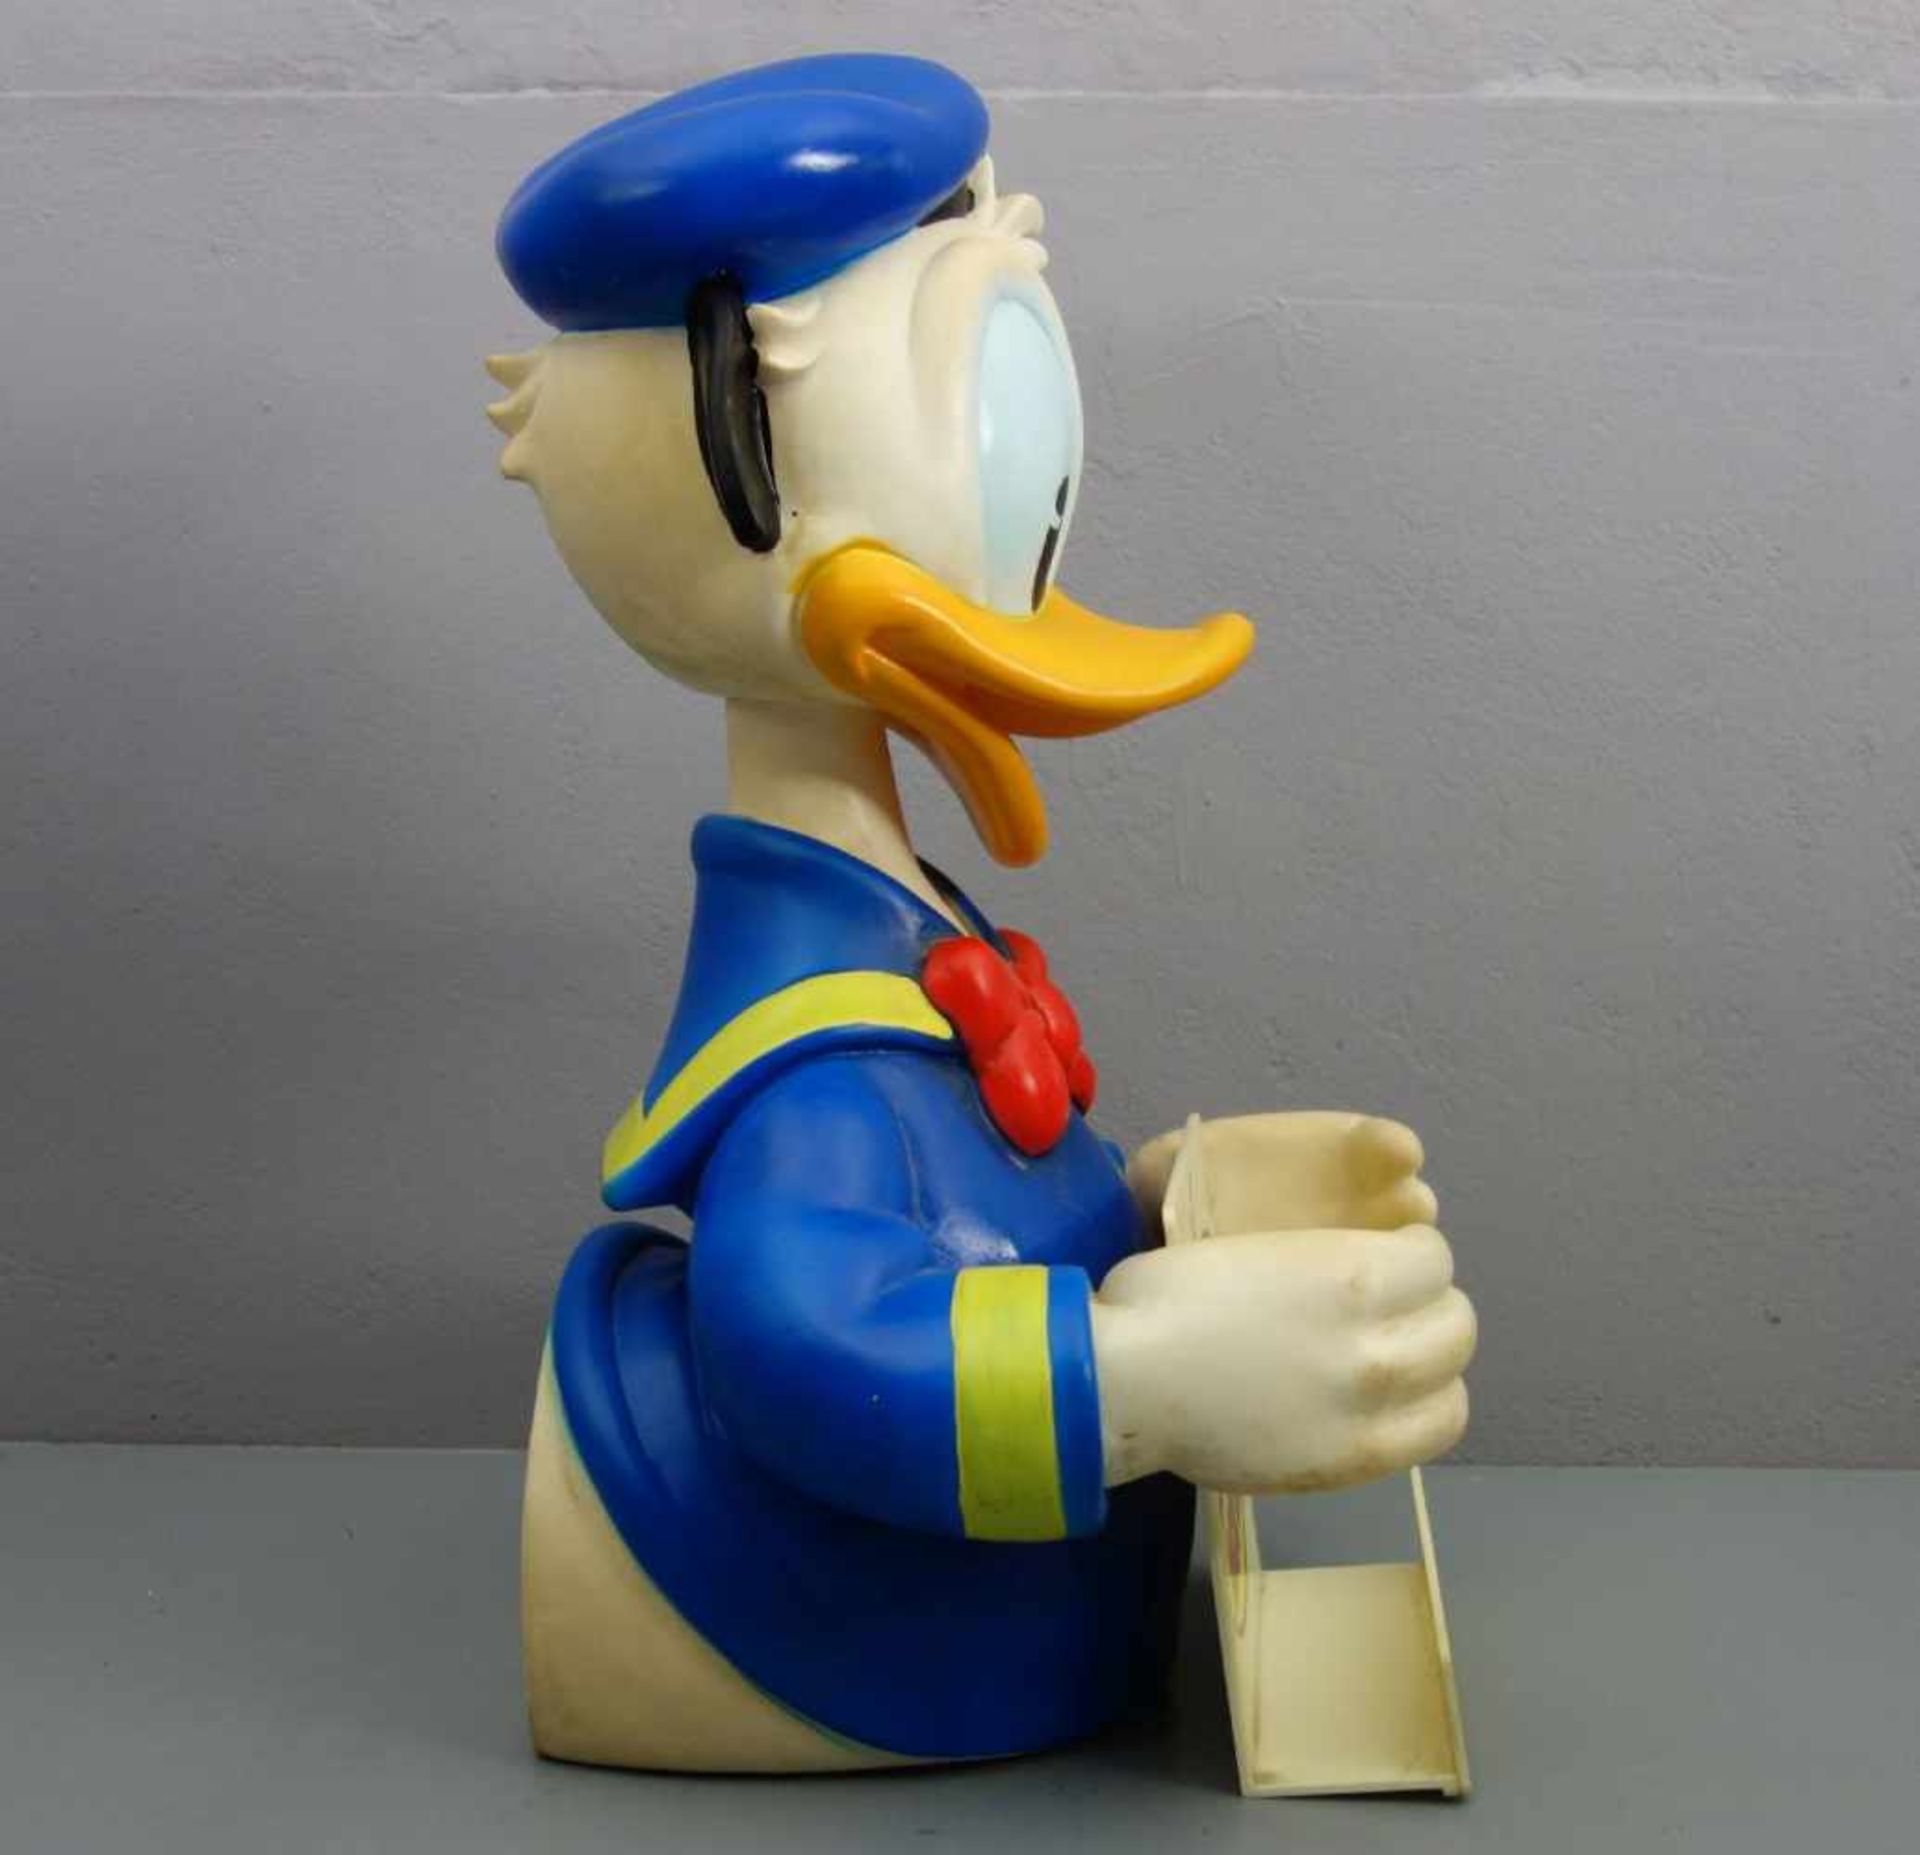 WALT DISNEY - WERBEAUFSTELLER / MERCHANDISE "Donald Duck", Thermoplastik, farbig gefasst. - Bild 2 aus 4